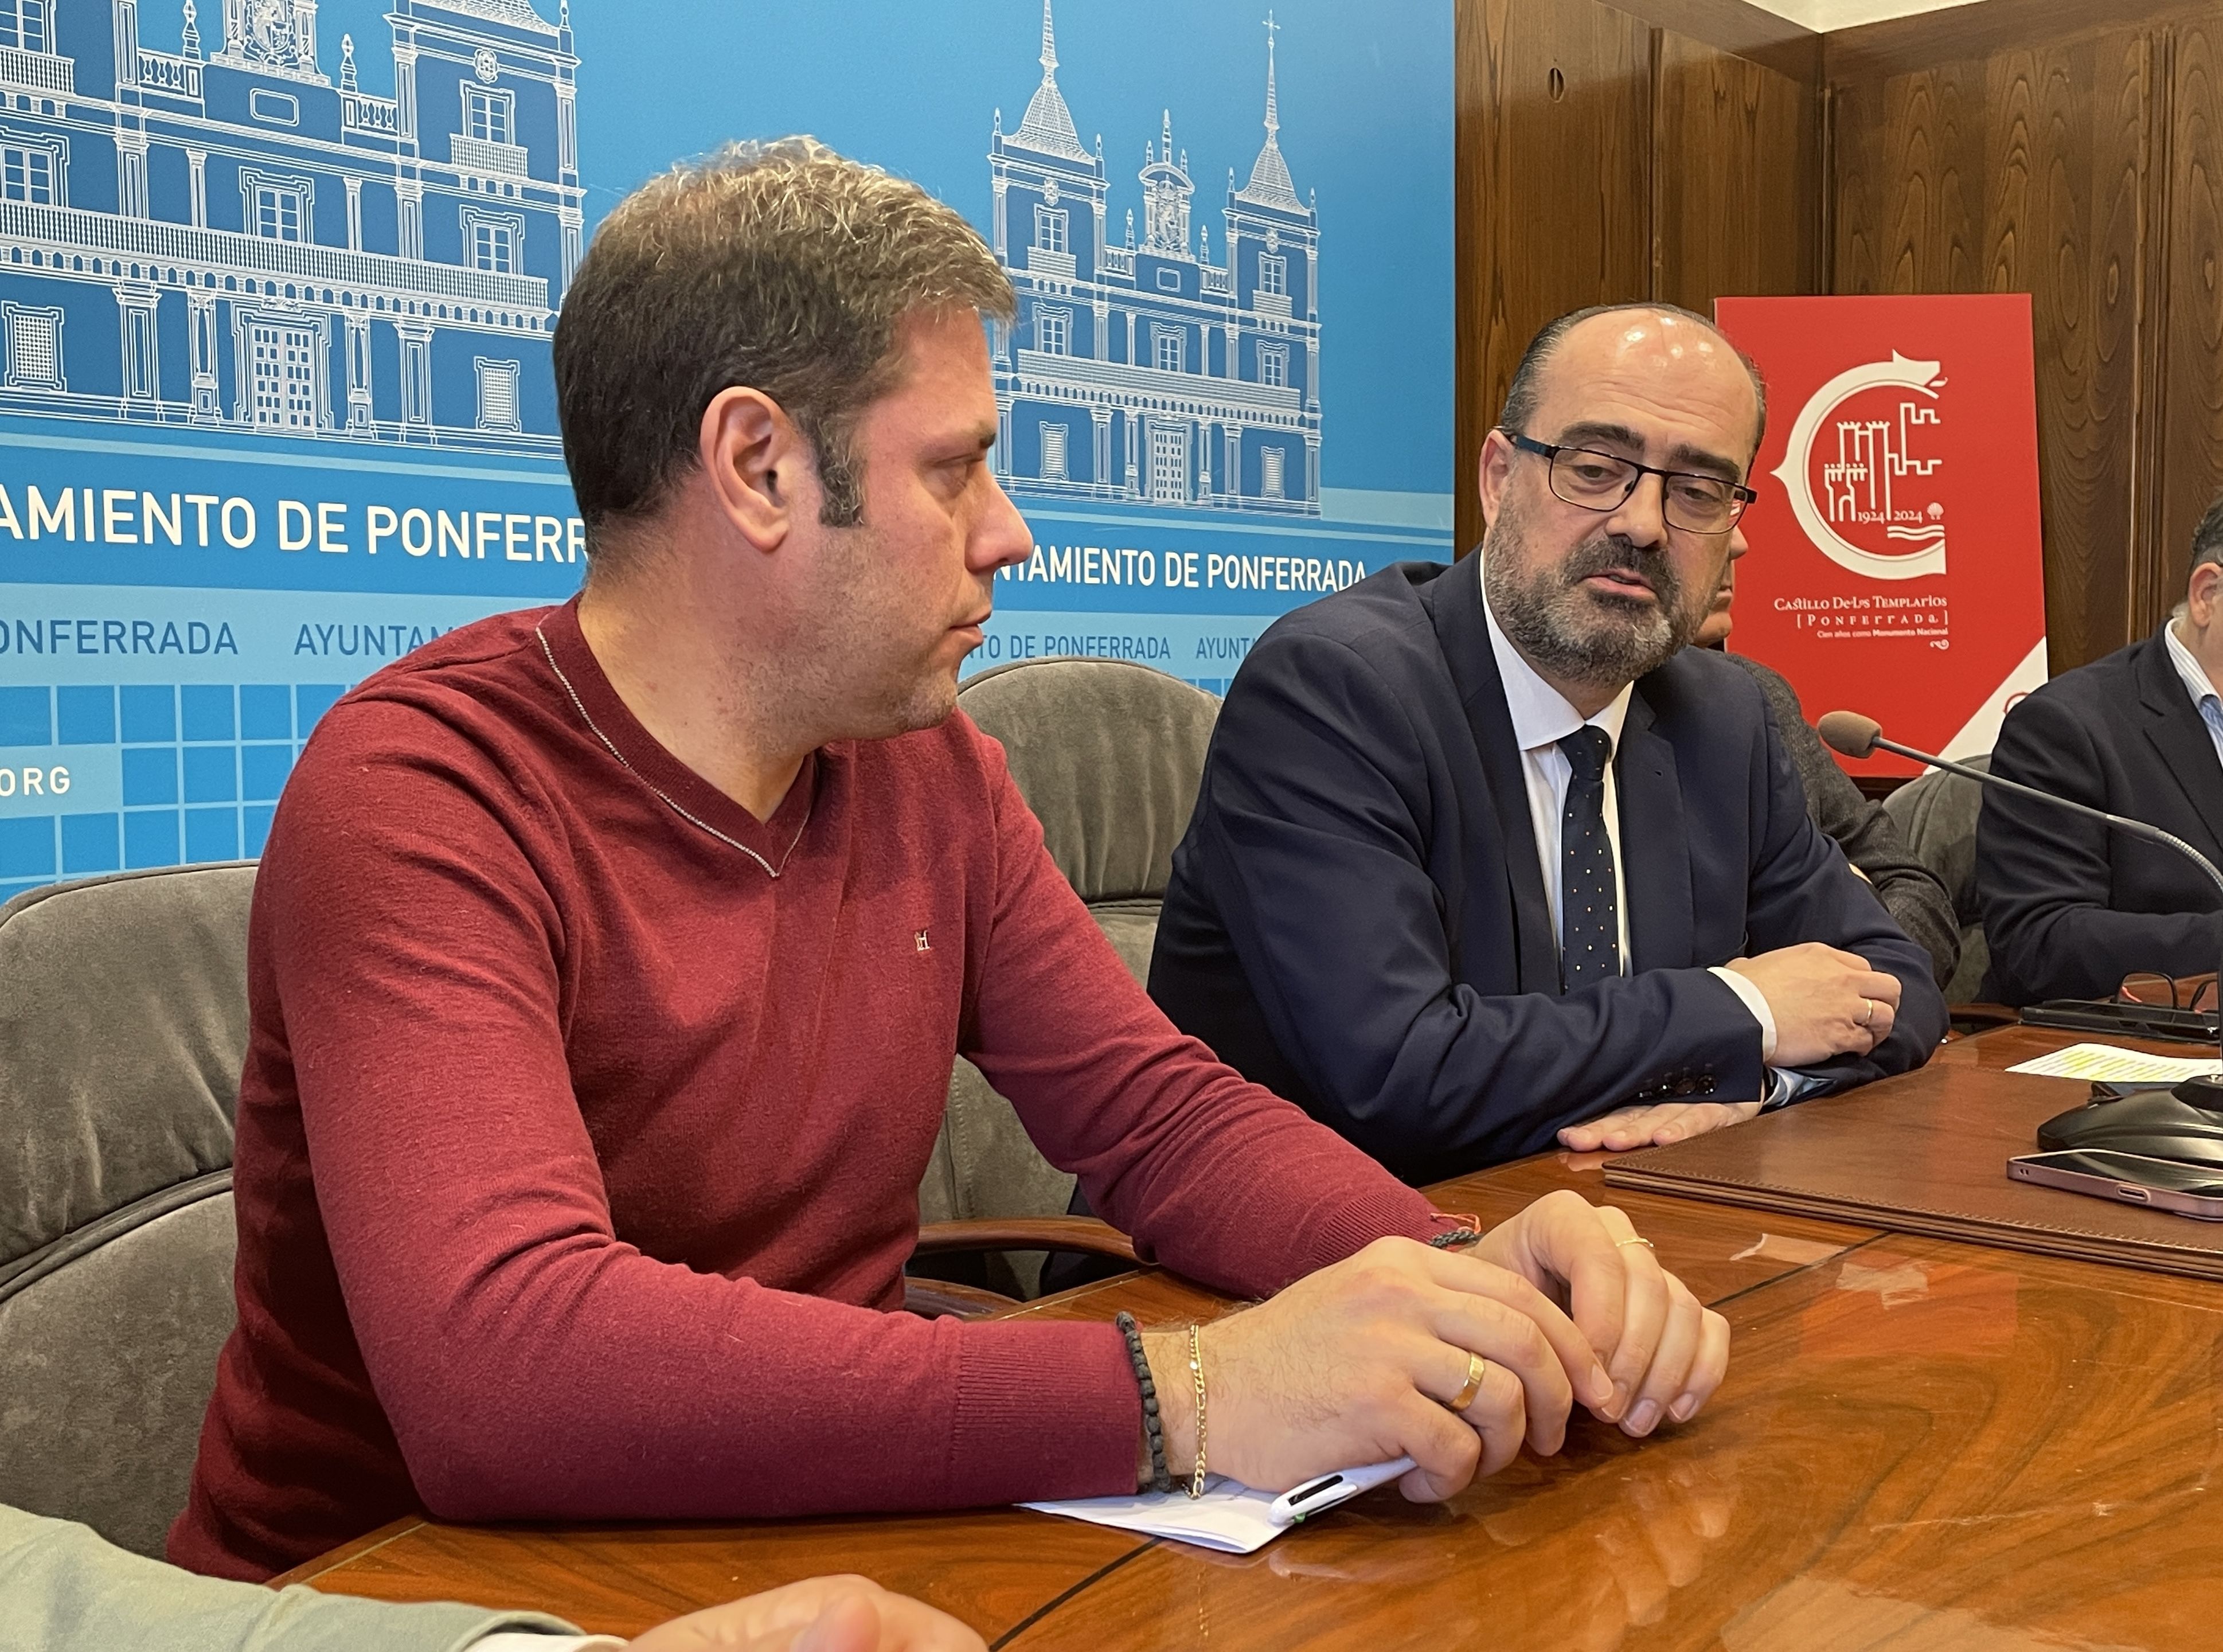 Iván Alonso y Marco Morala hablaron juntos sobre una posible moción de censura. | J.F.